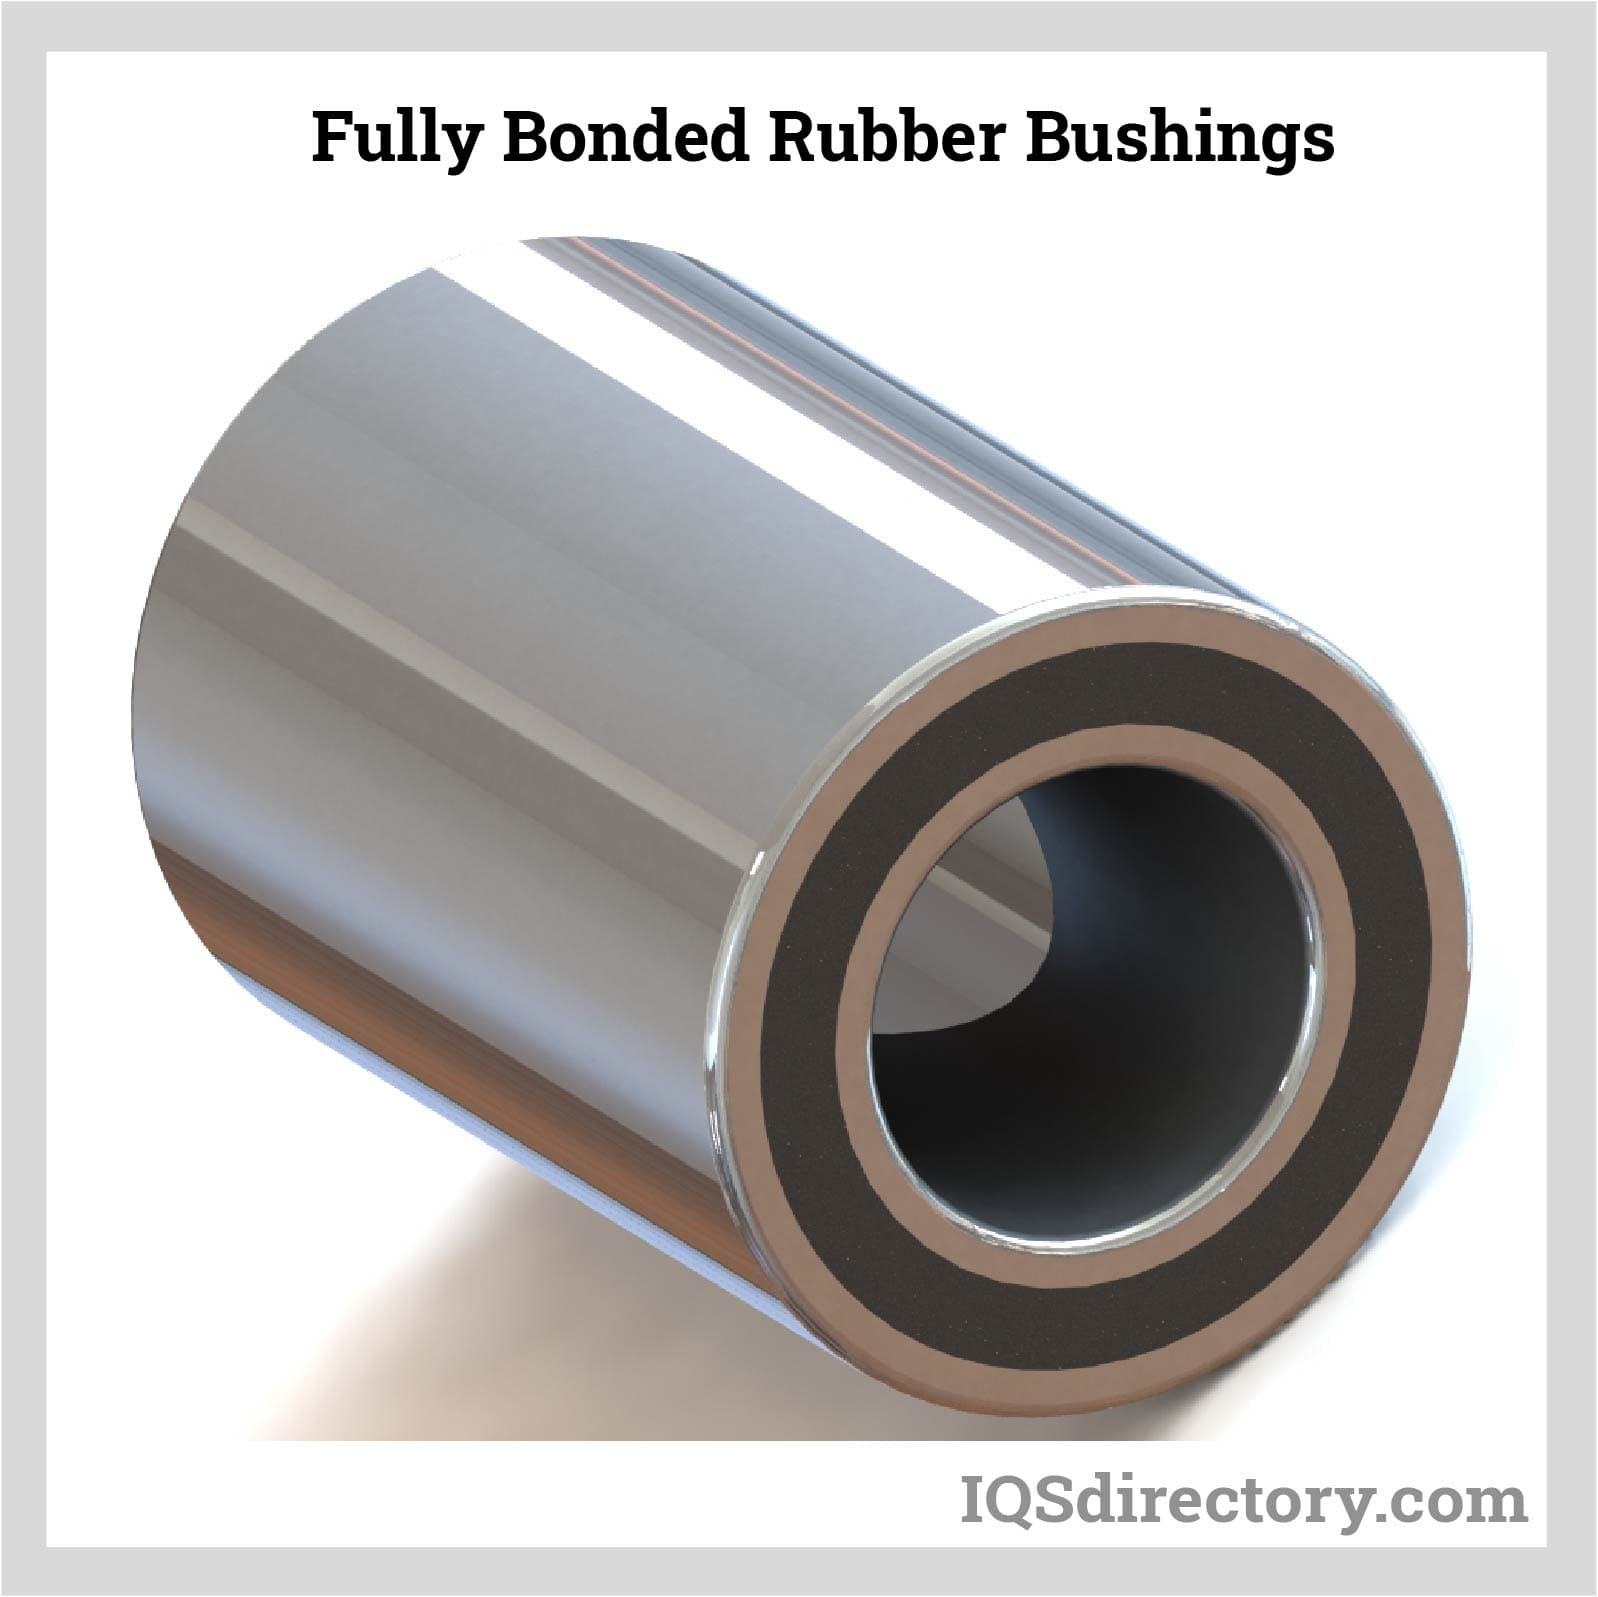 Fully Bonded Rubber Bushings